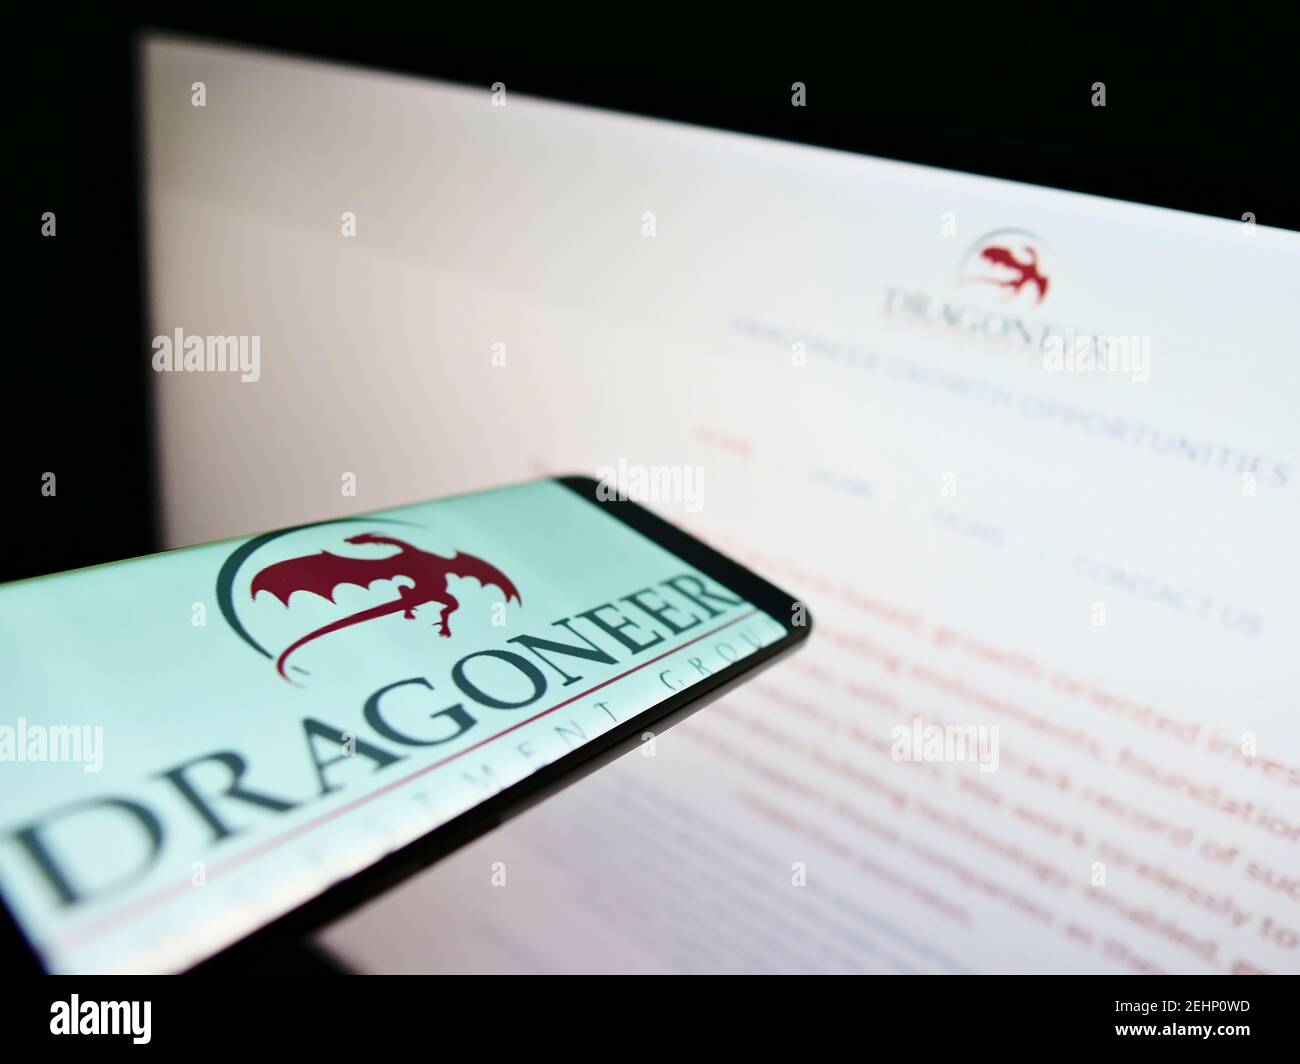 Teléfono móvil con el logotipo de la empresa del inversor americano Dragoneer Investment Group en la pantalla frente al sitio web. Enfoque en el centro de la pantalla del teléfono. Foto de stock